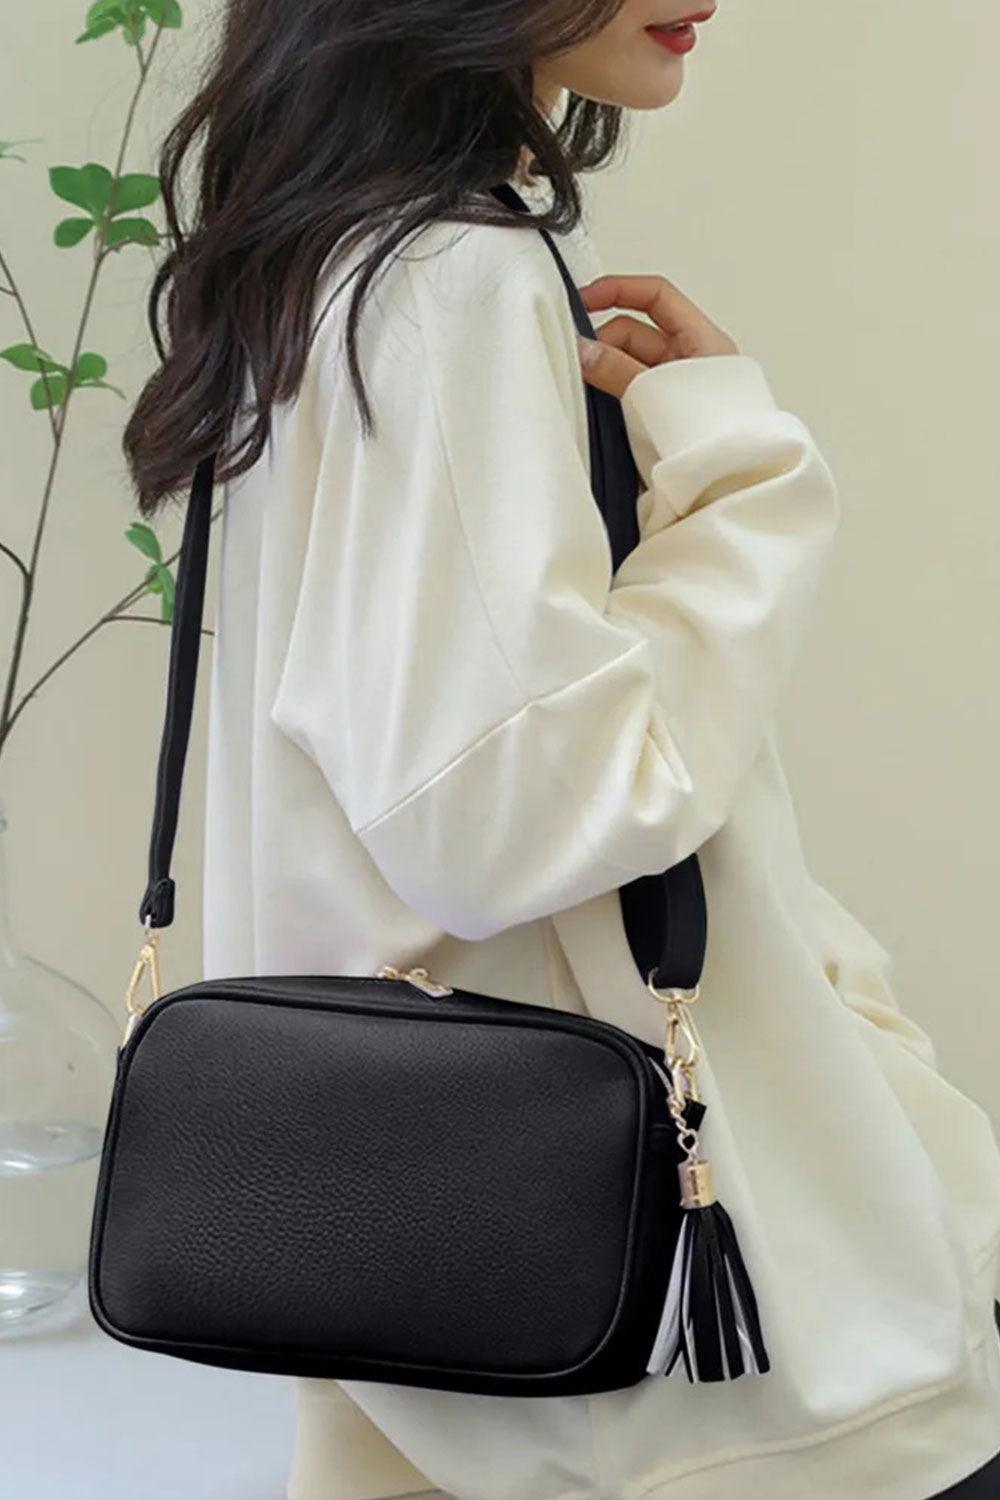 Tassel PU Leather Crossbody Bag - Black - Daily Fashion